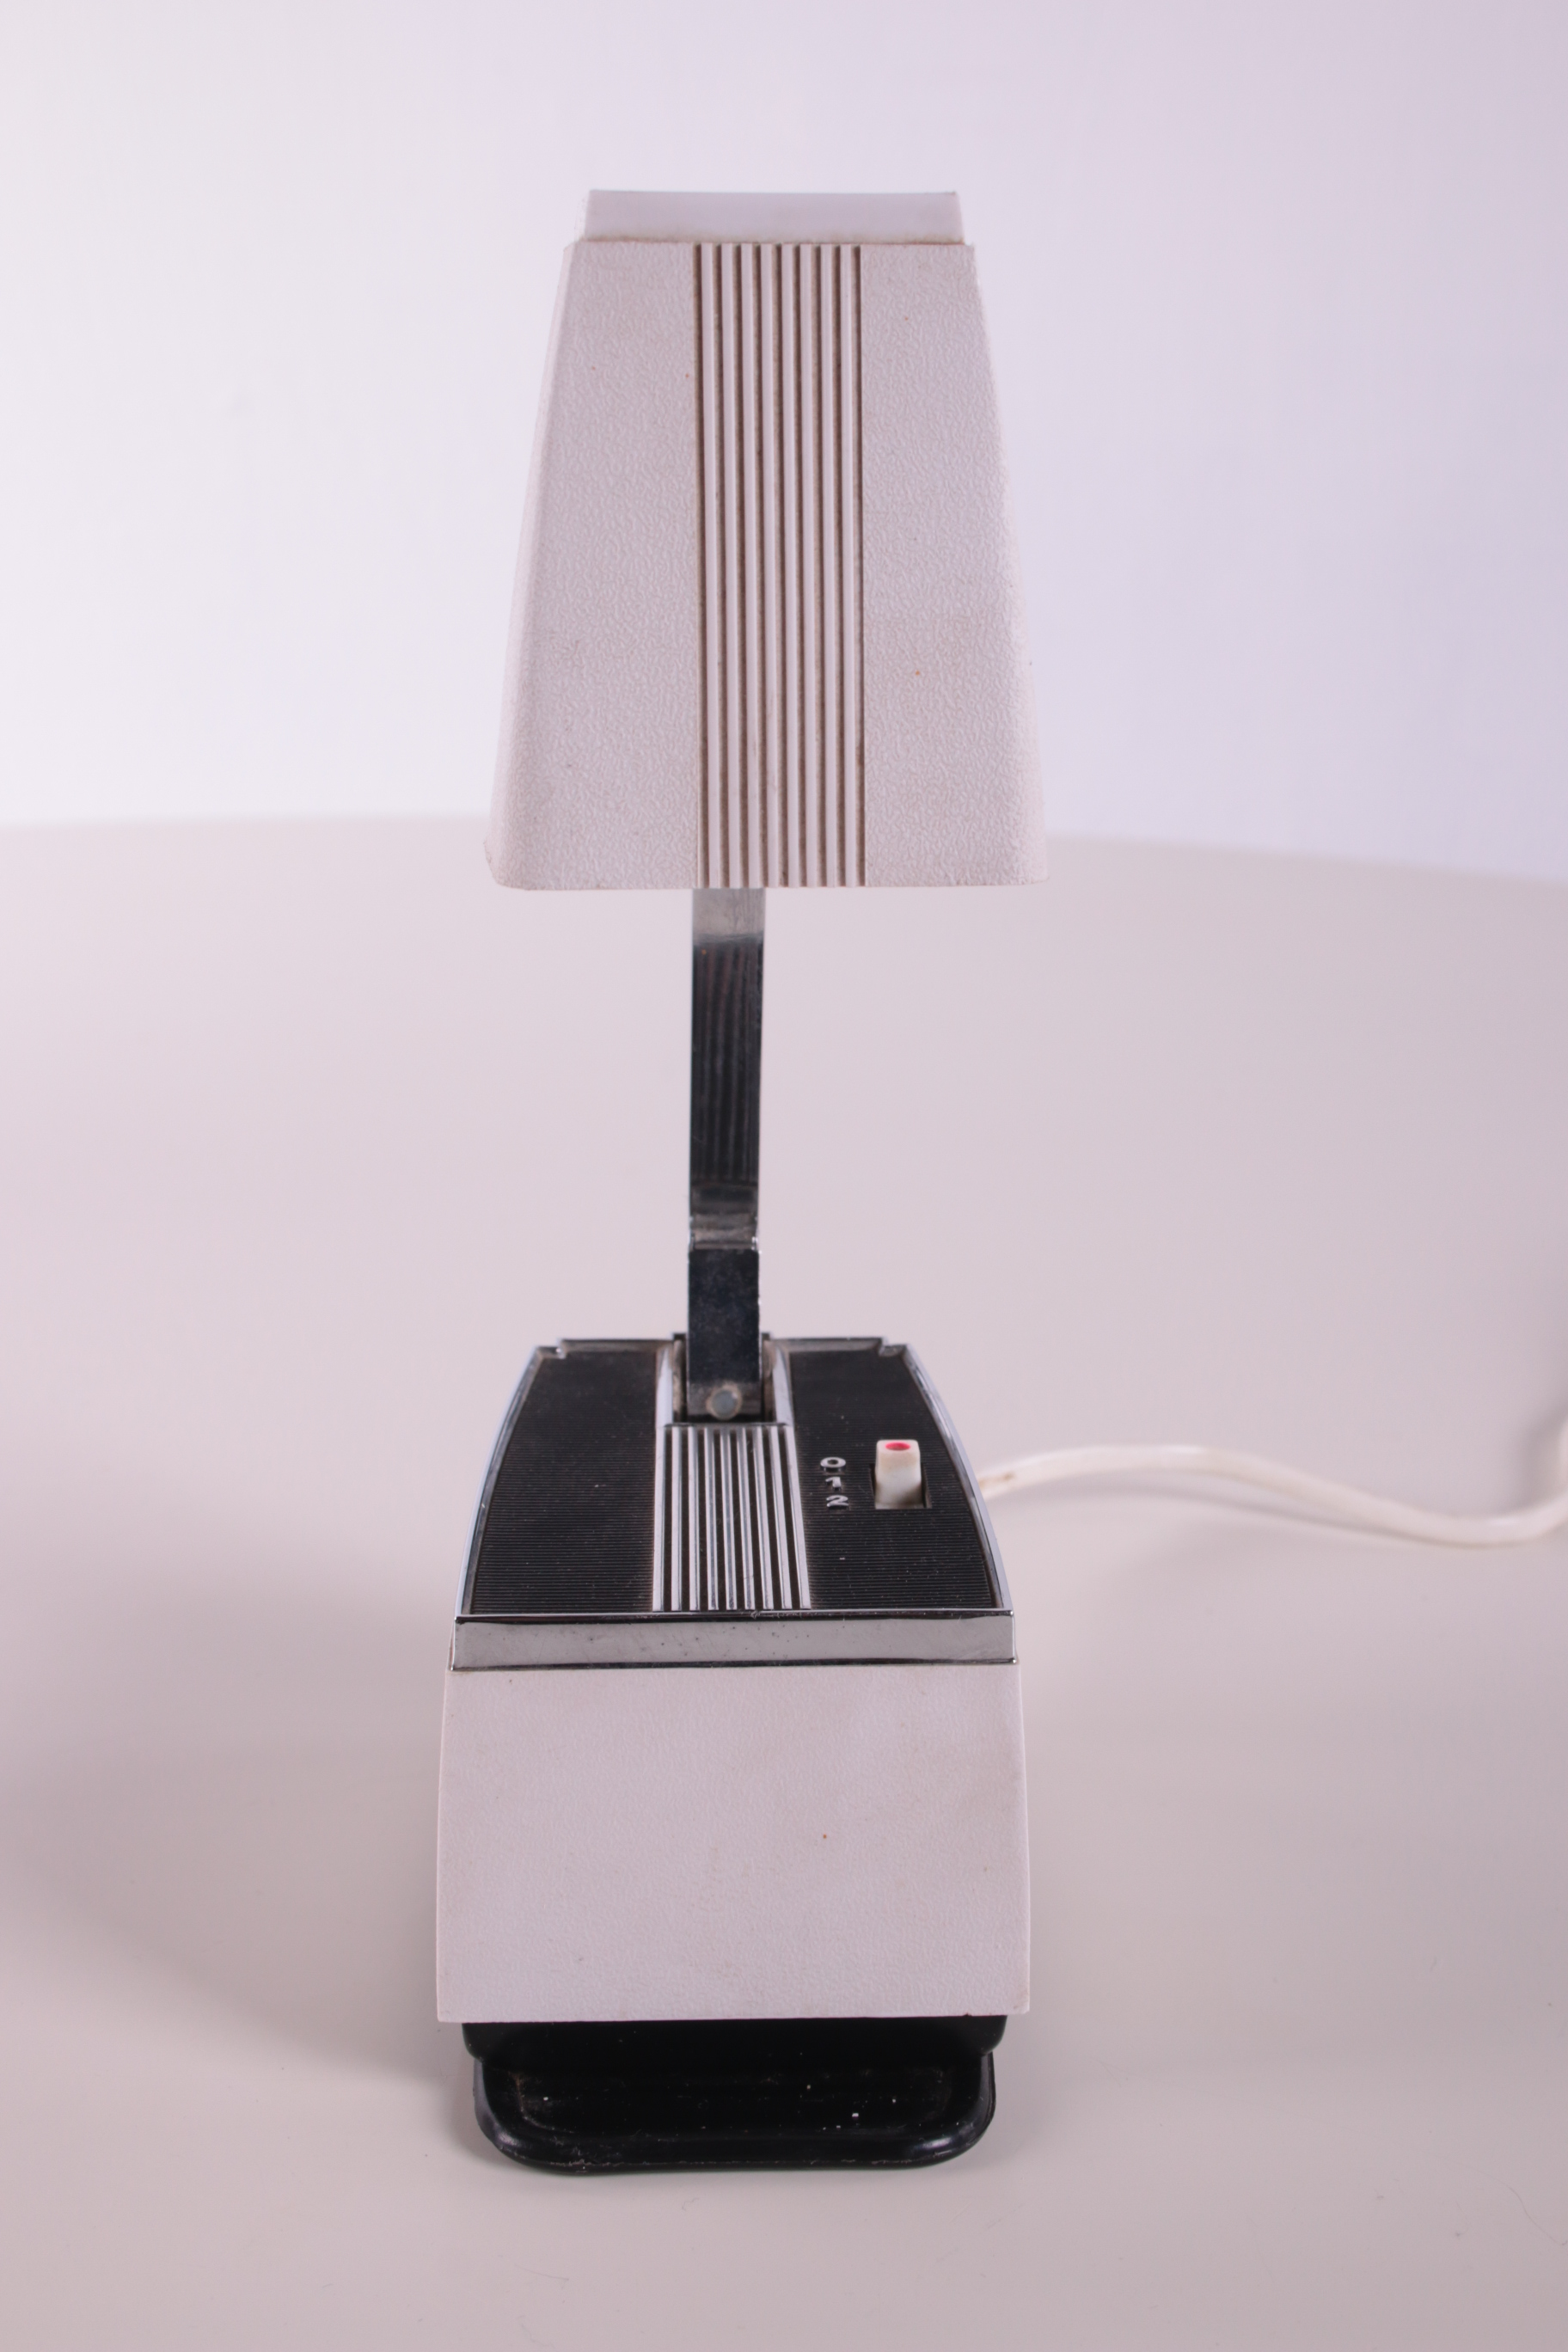 Bureau lampje Deens ontwerp jaren60 voorkant